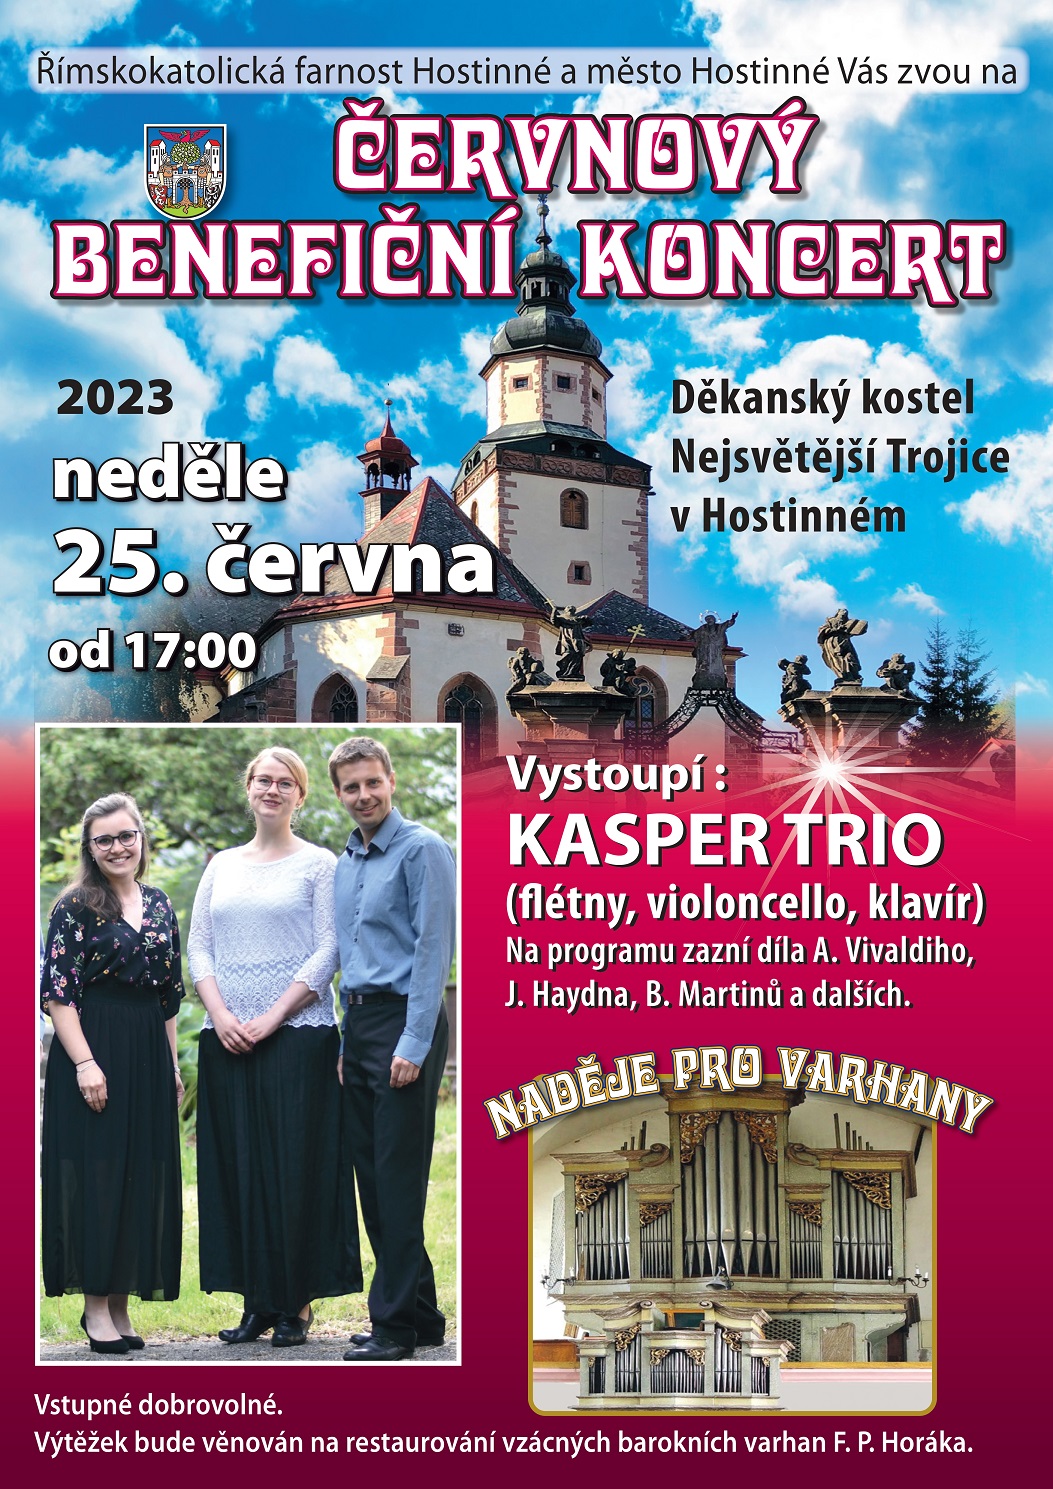 A3 Cervnovy koncert 23_page-0001 - kopie.jpg